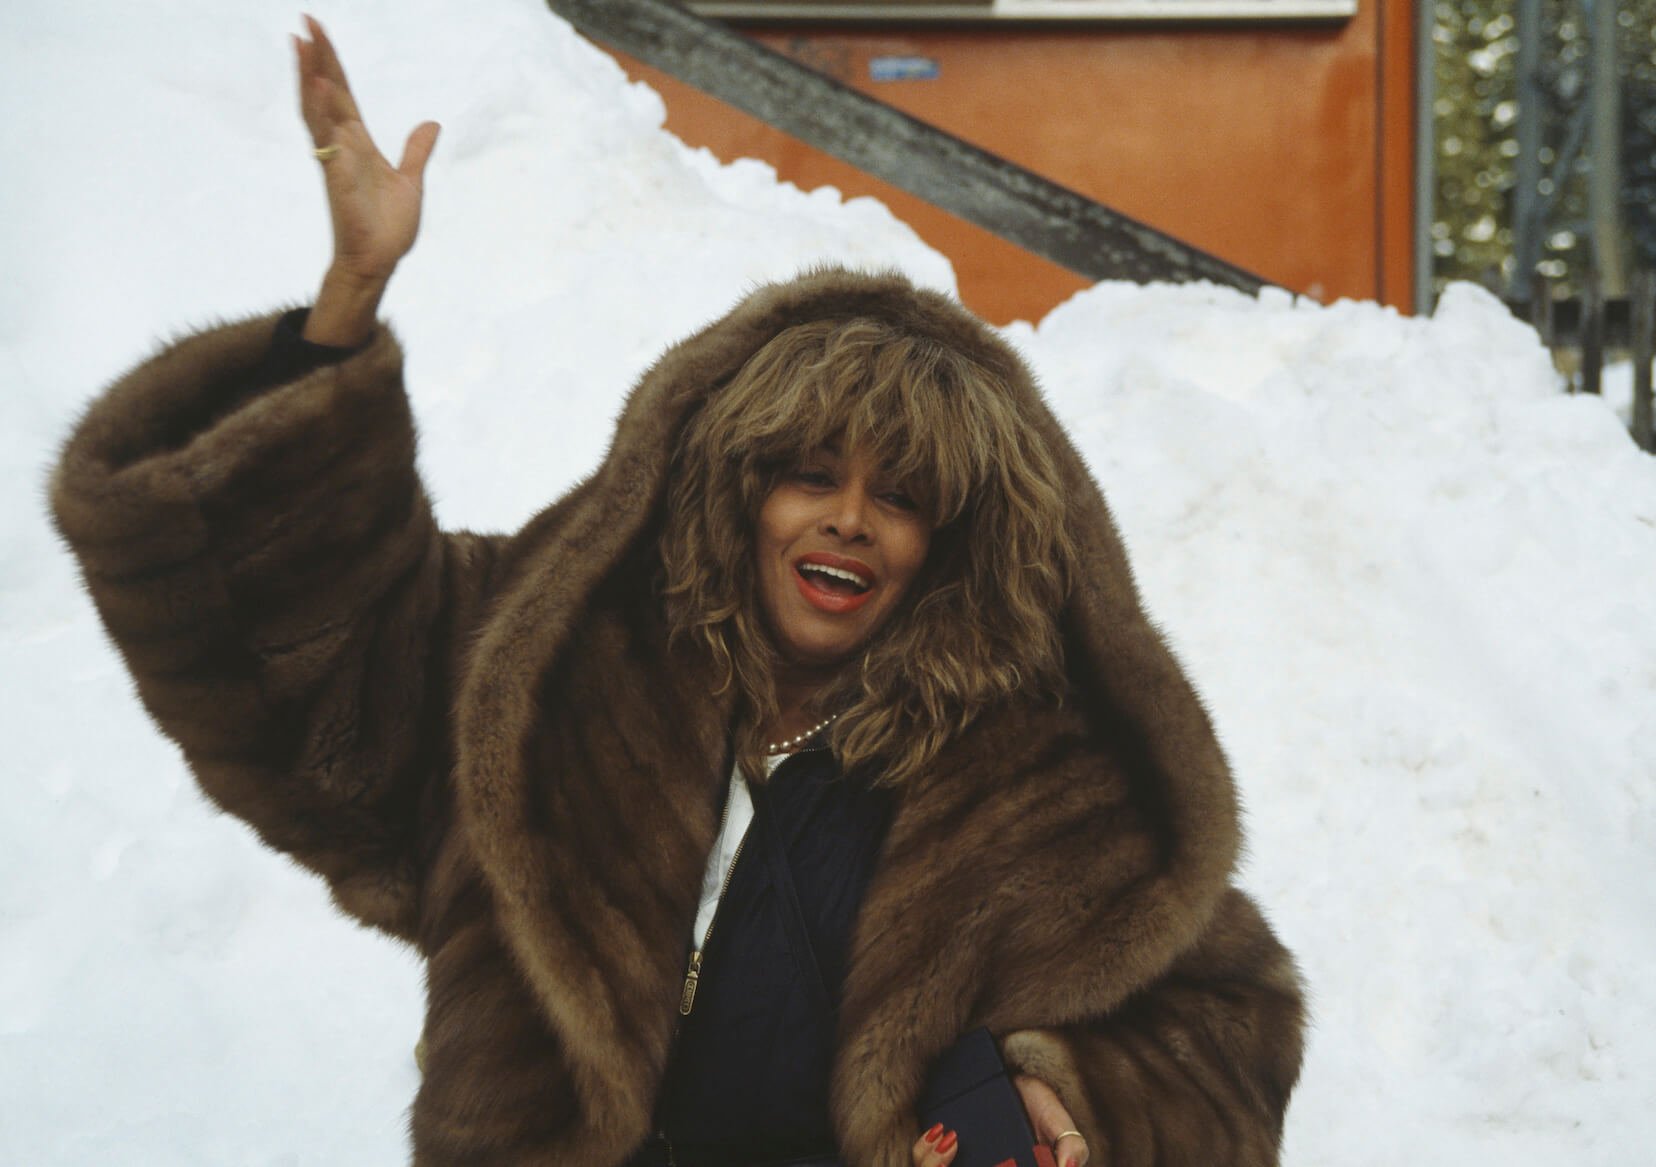 Pourquoi Tina Turner a-t-elle renoncé à la nationalité américaine ?